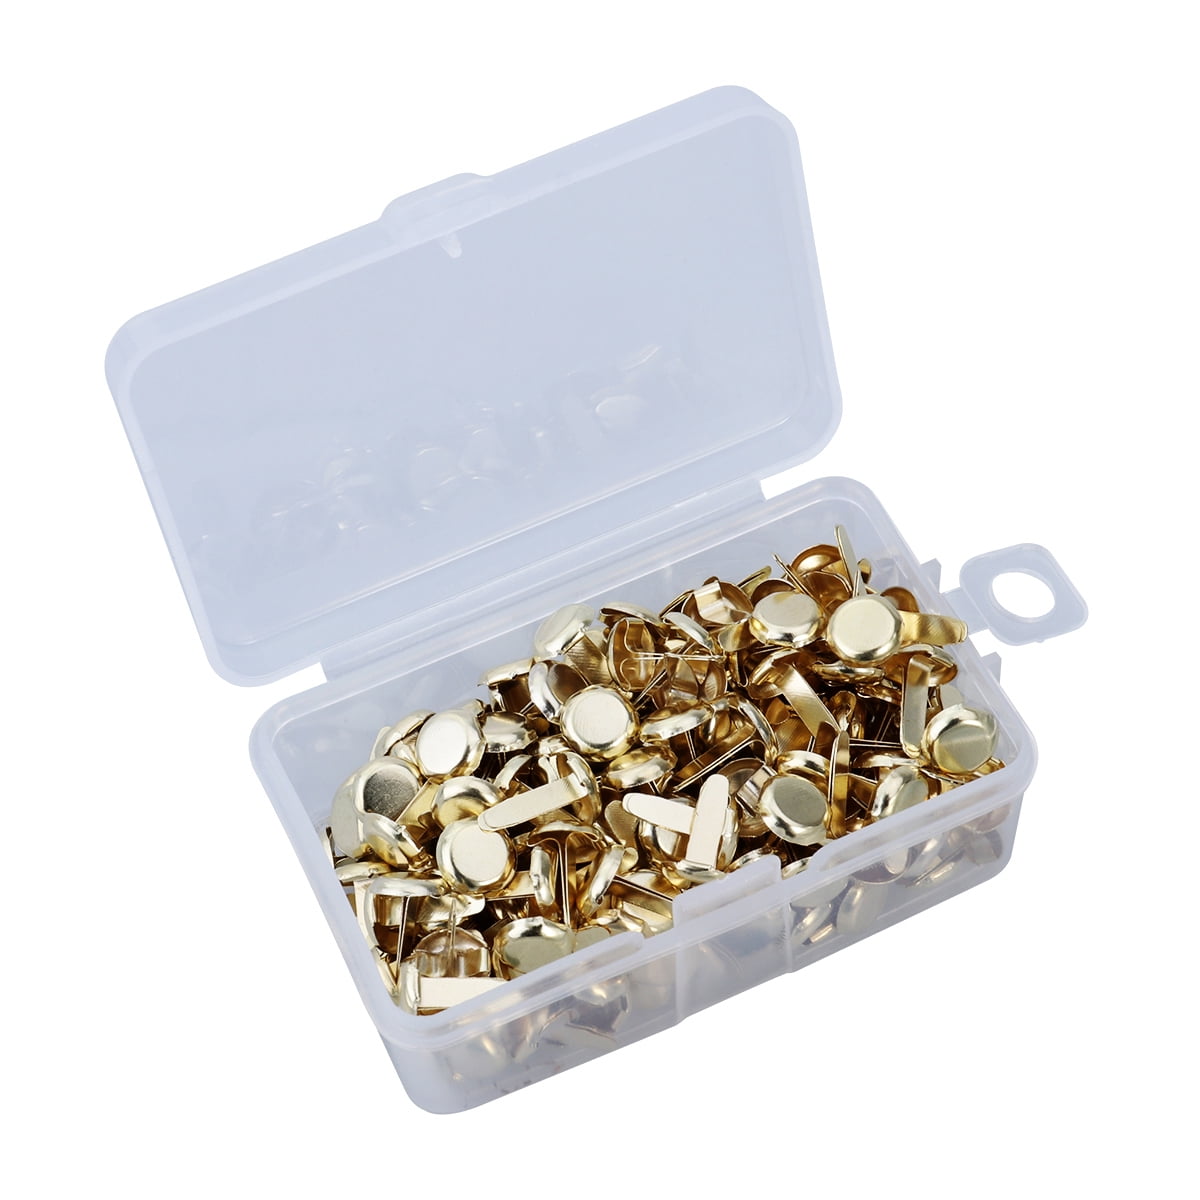 Vidillo Mini Brads 400Pcs Paper Fasteners Gold Silver Round Metal